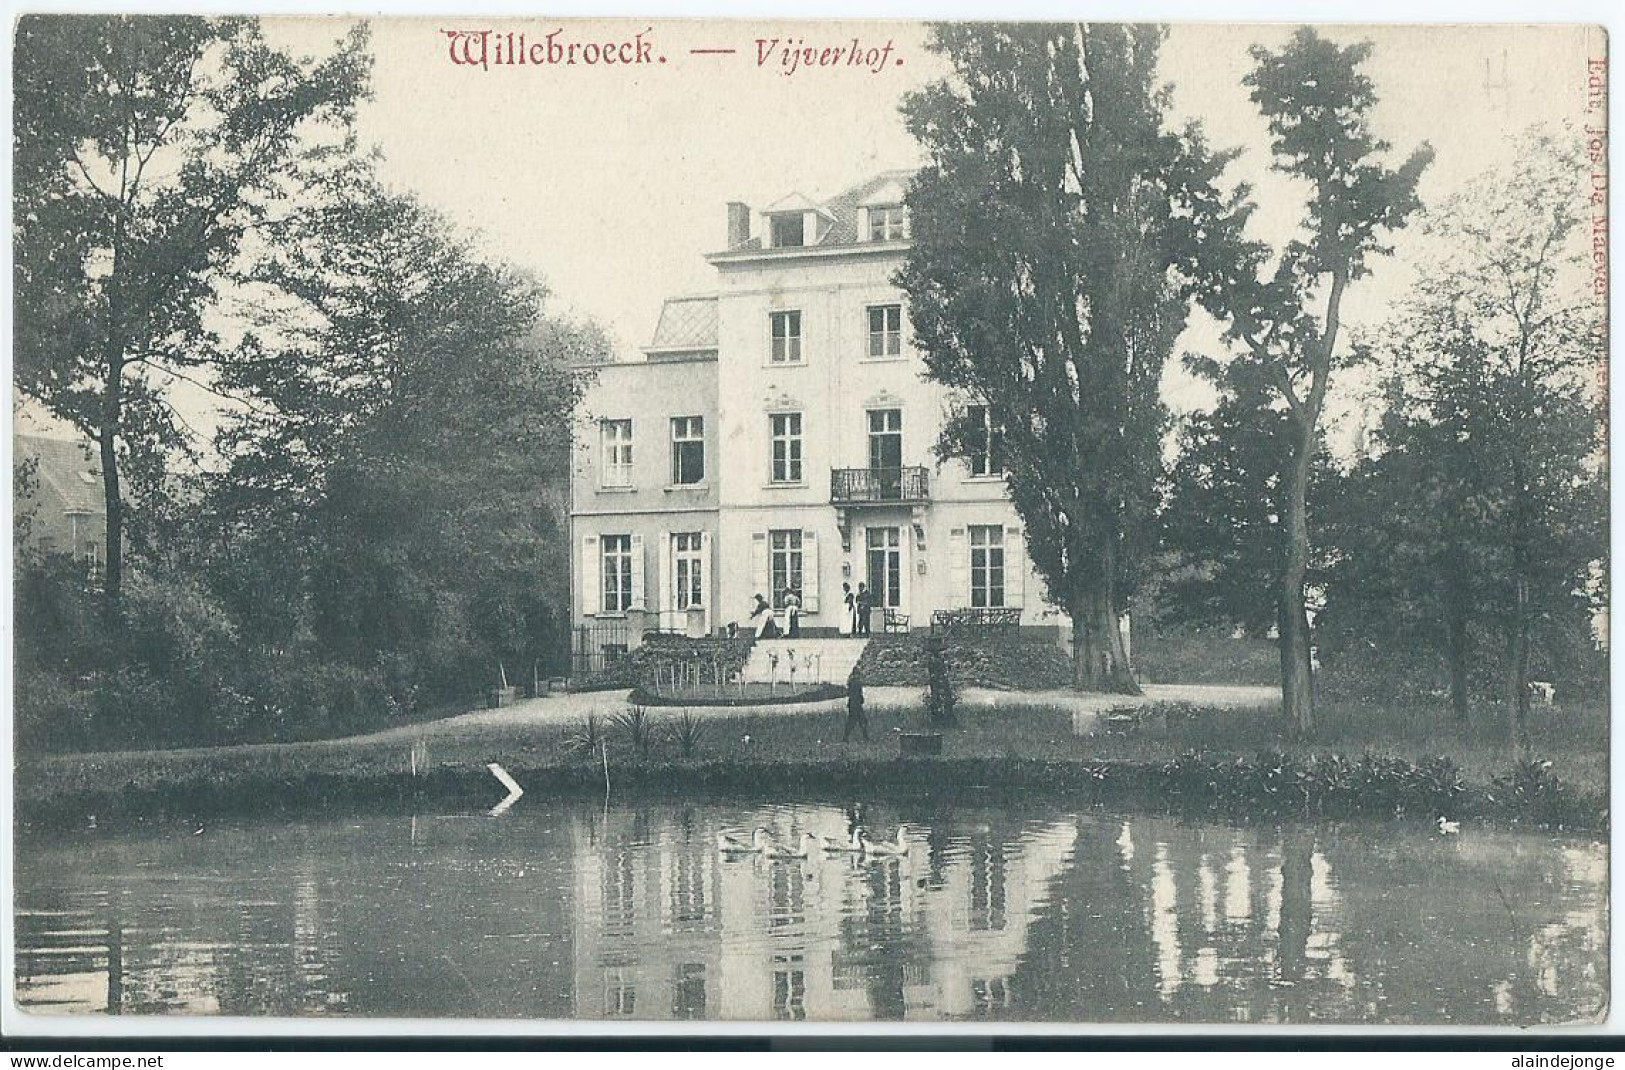 Willebroek - Willebroeck - Vijverhof  - Willebroek